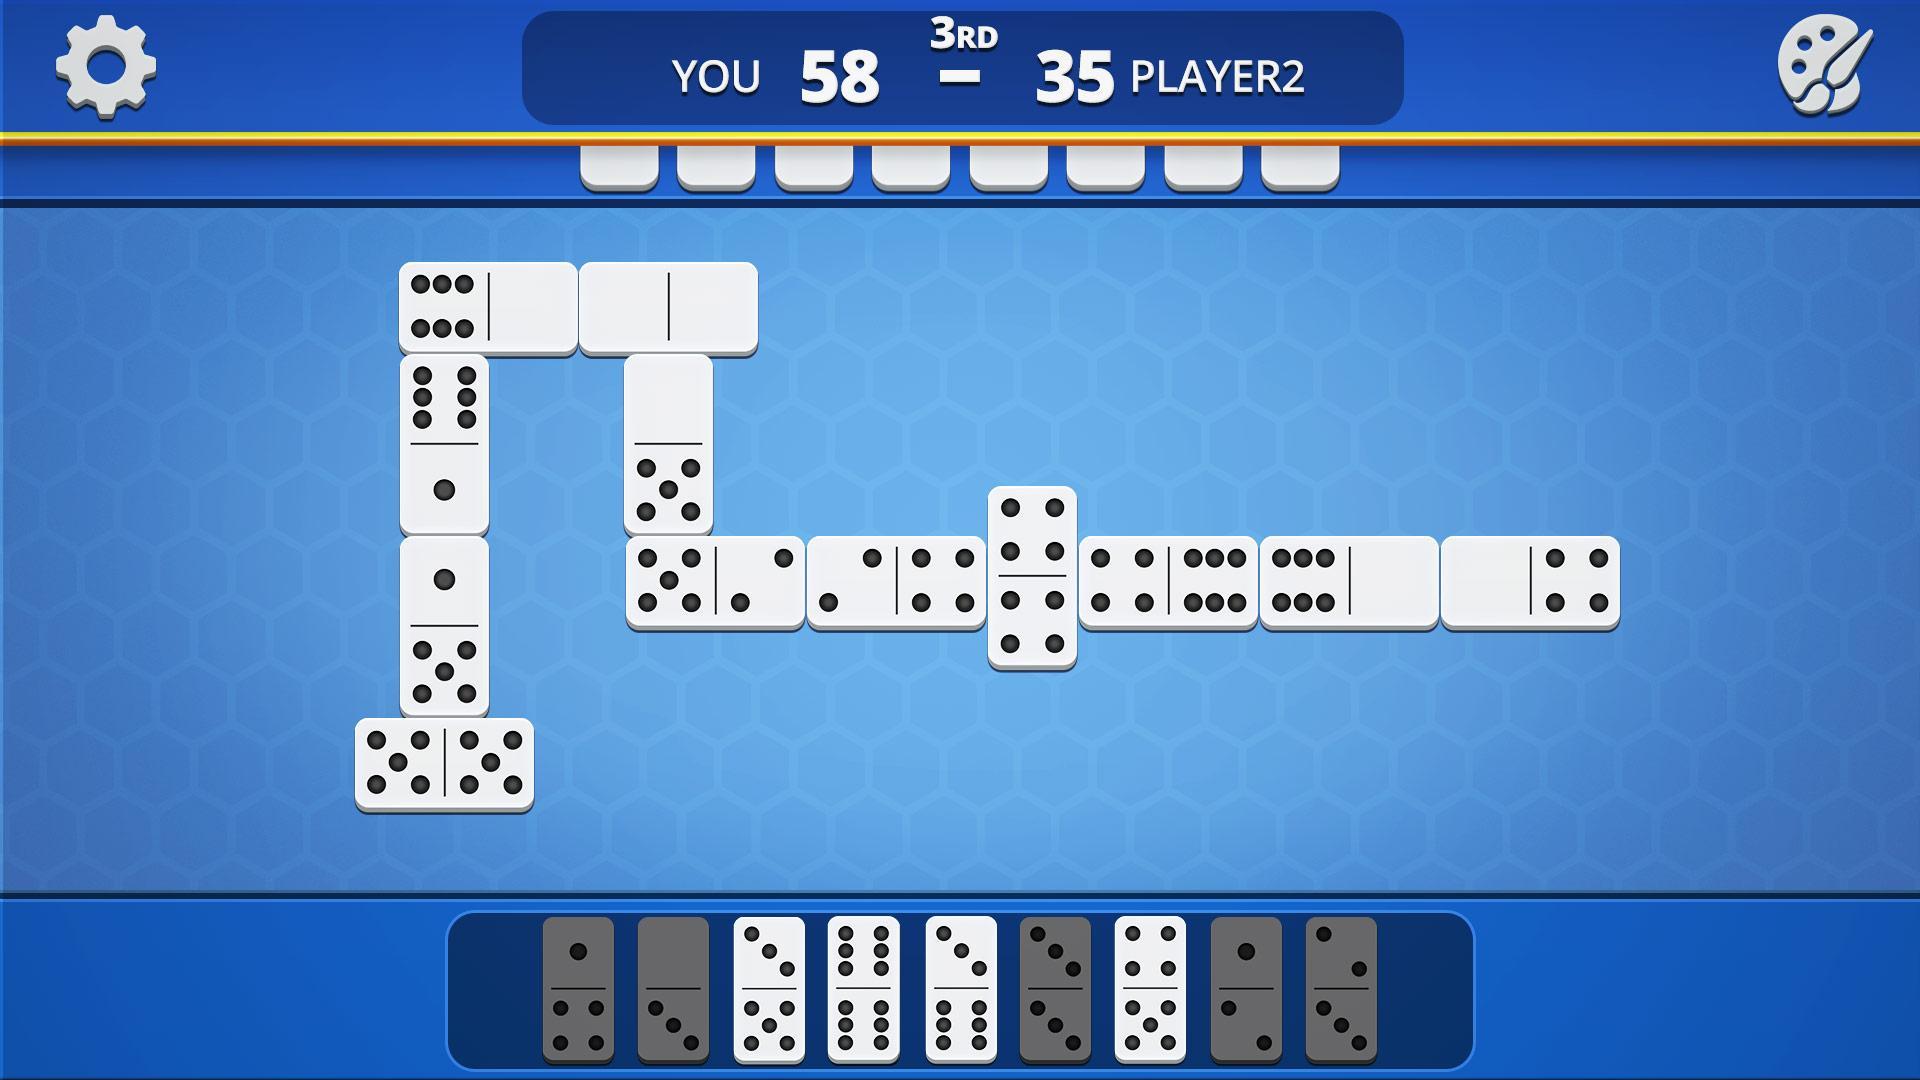 Dominoes Classic Domino Tile Based Game 1.2.5 Screenshot 8